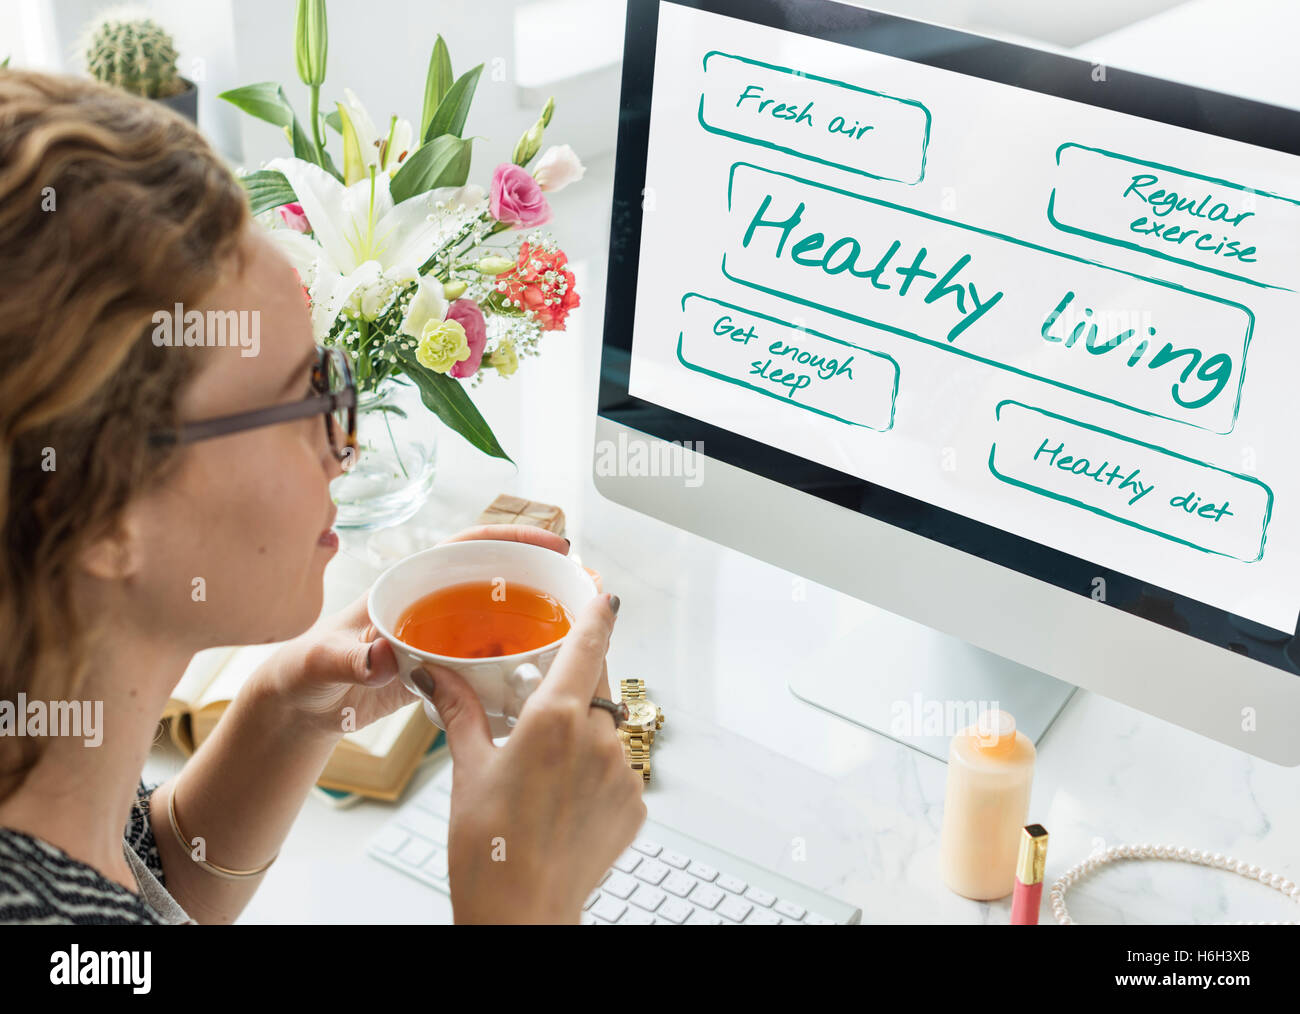 Gesundes Wohnen Wellness Ernährung Übung Worte Grafikkonzept Stockfoto